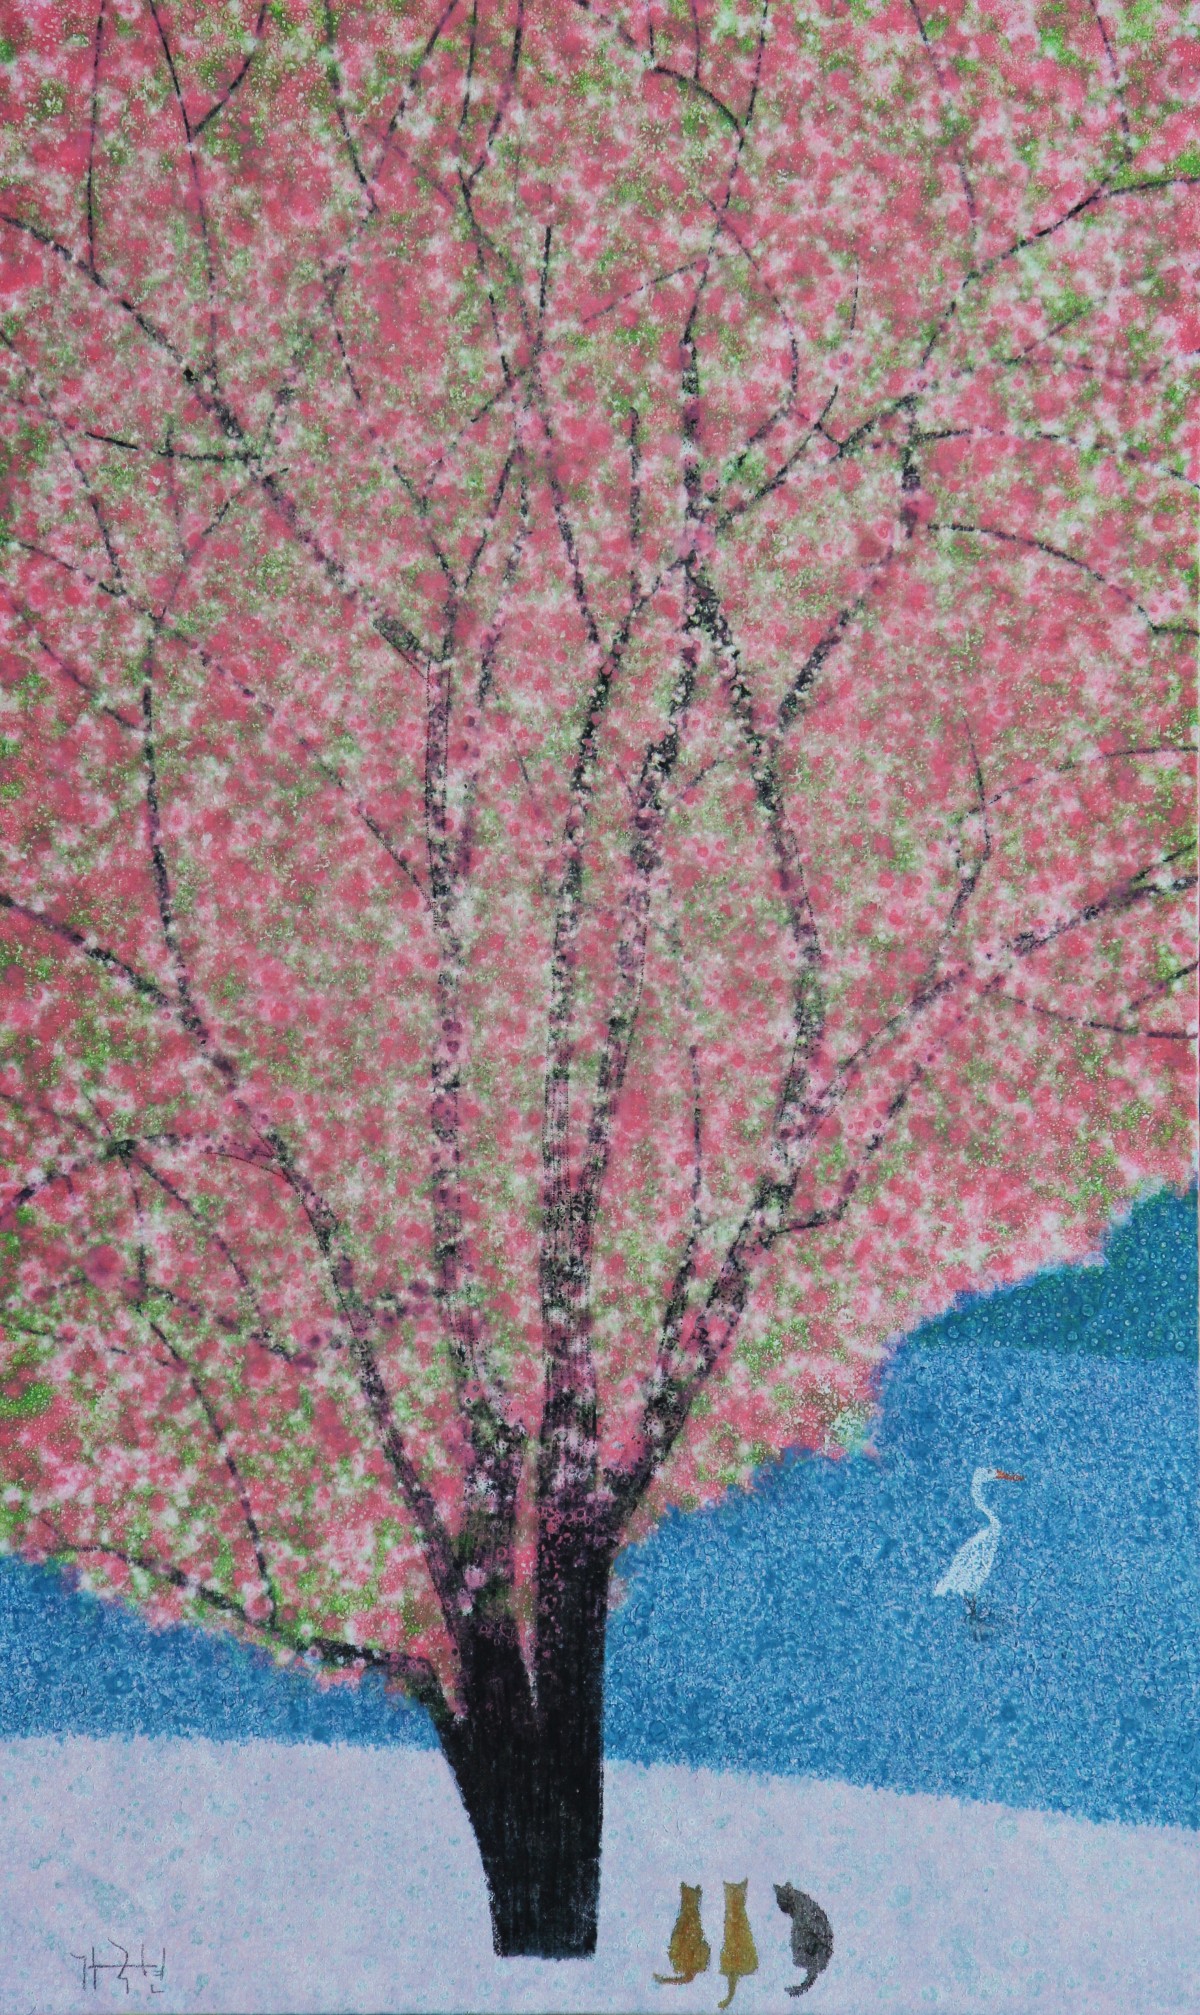 가국현, 감성풍경, Oil on canvas, 100x60cm, 2021